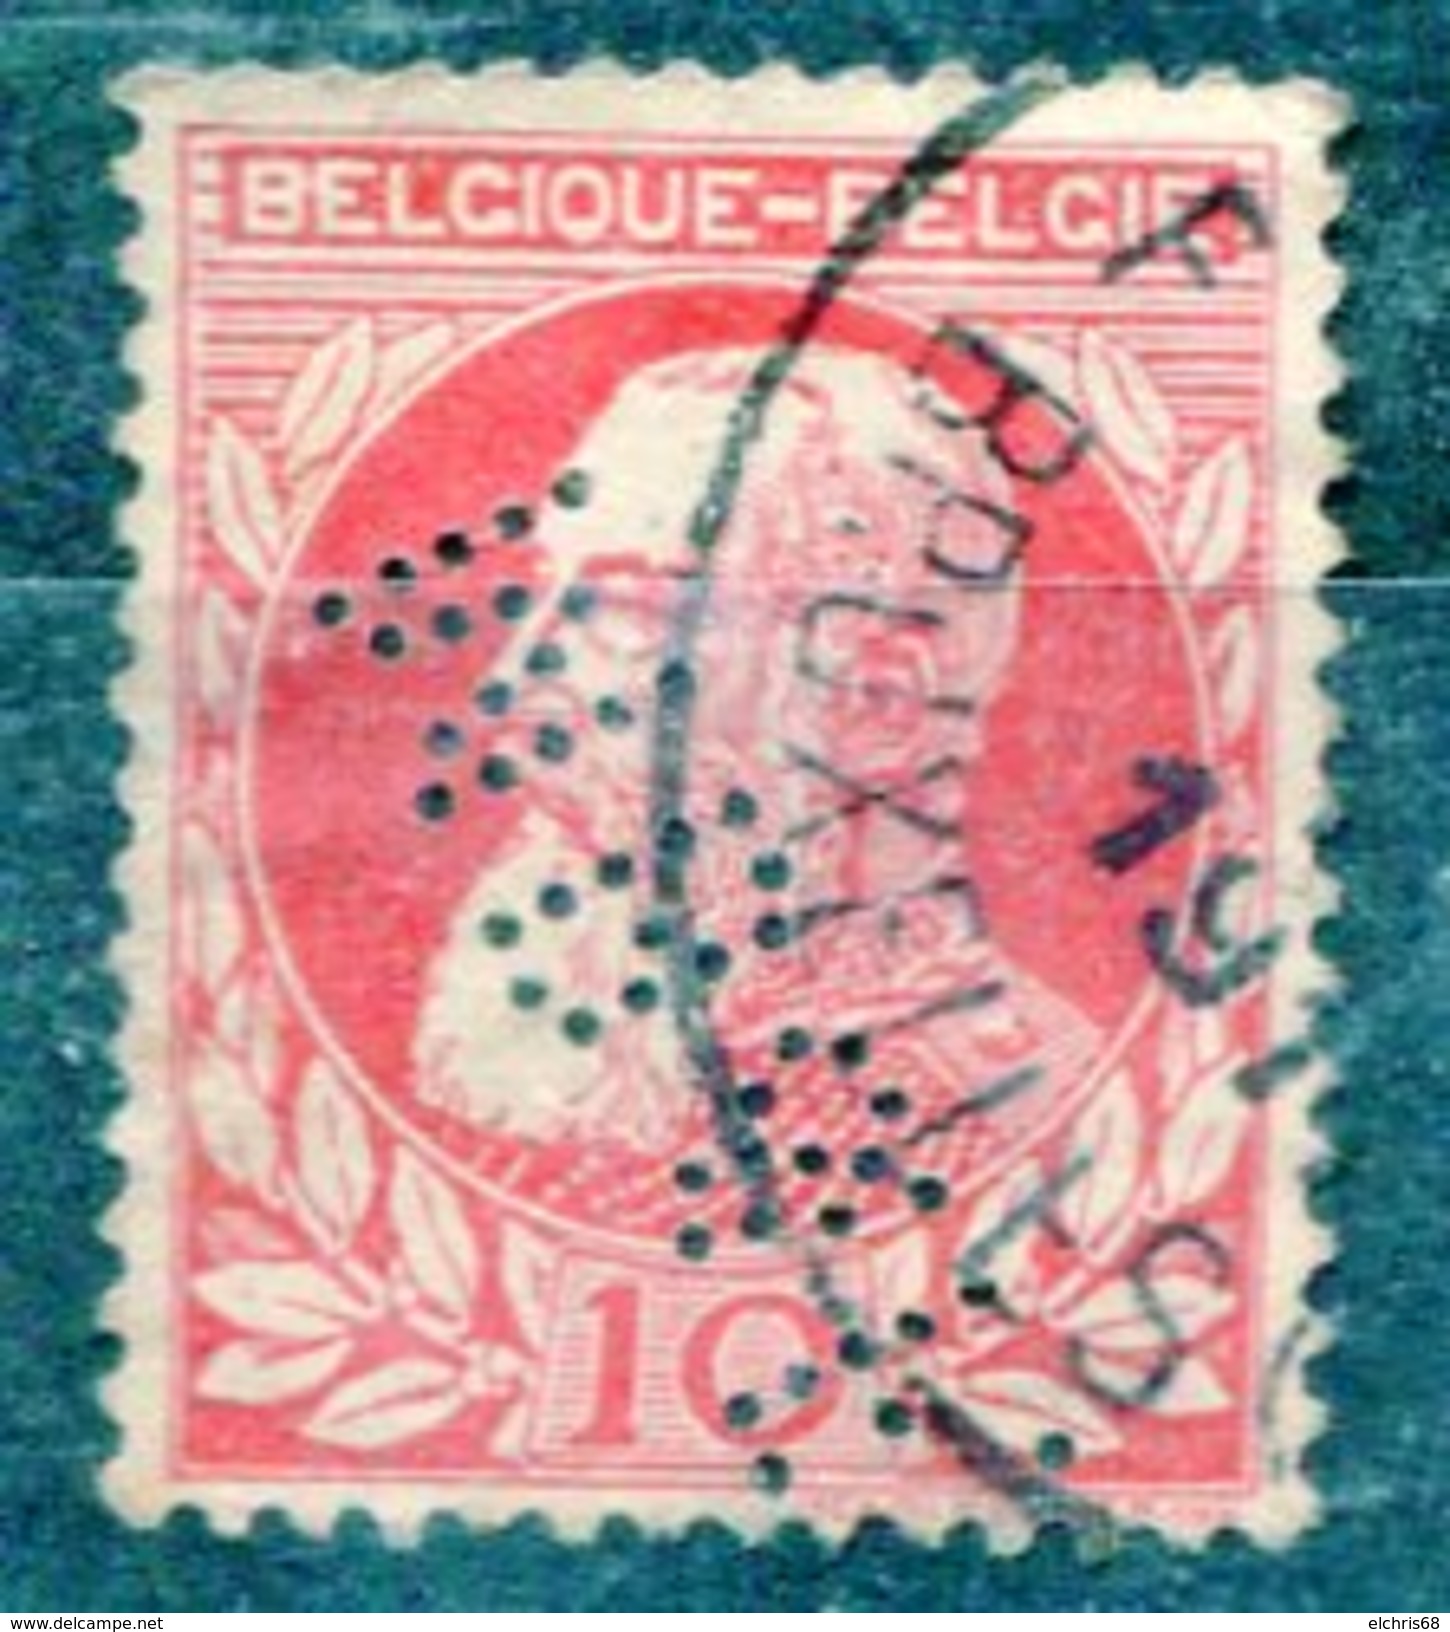 Belgique Timbre Perforé - Unclassified